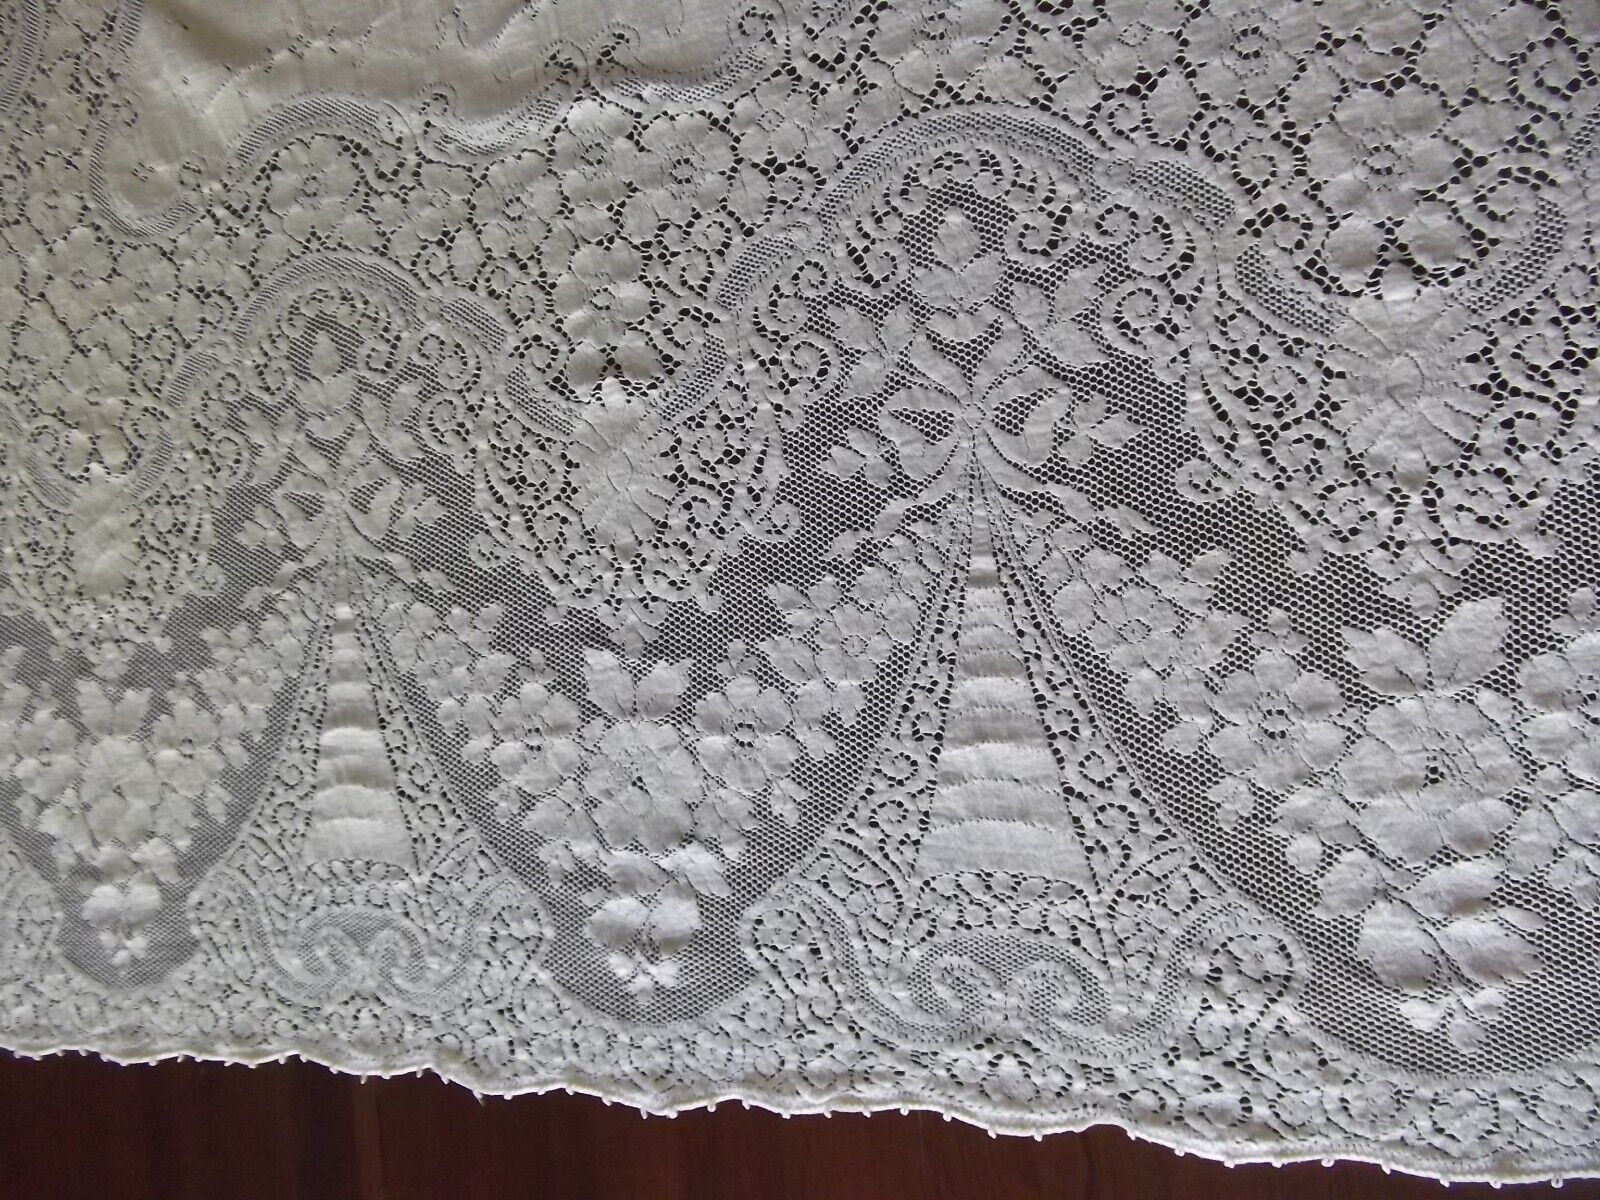 antique quaker lace ecru tablecloth oblong picot edge cotton 62x83 BEAUTIFUL